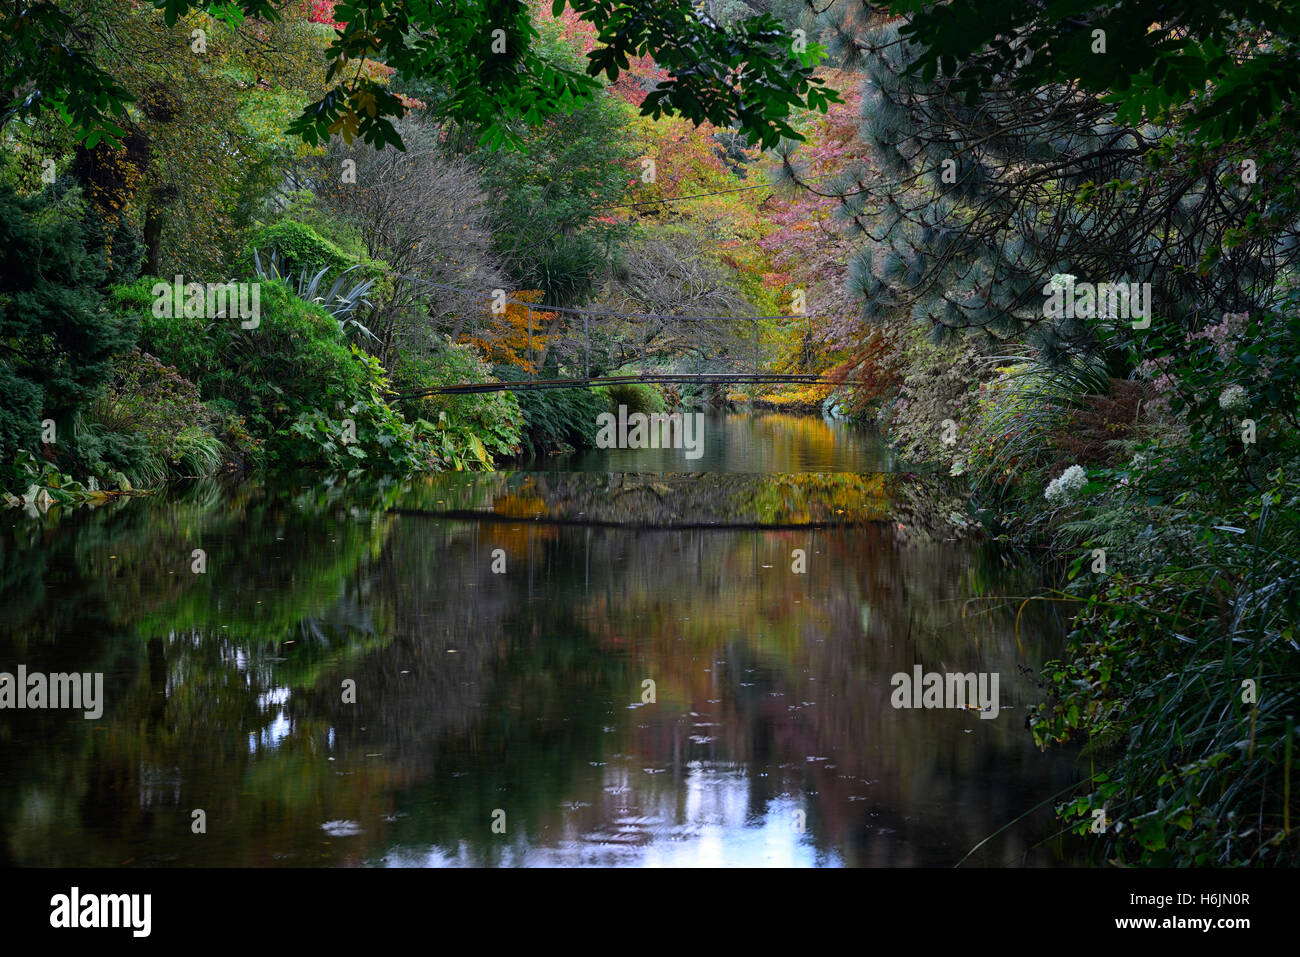 Ponte pedonale riflessa riflettono la riflessione sul fiume Vartry Mount Usher gardens Wicklow Autunno colori autunnali colori floreali RM Foto Stock